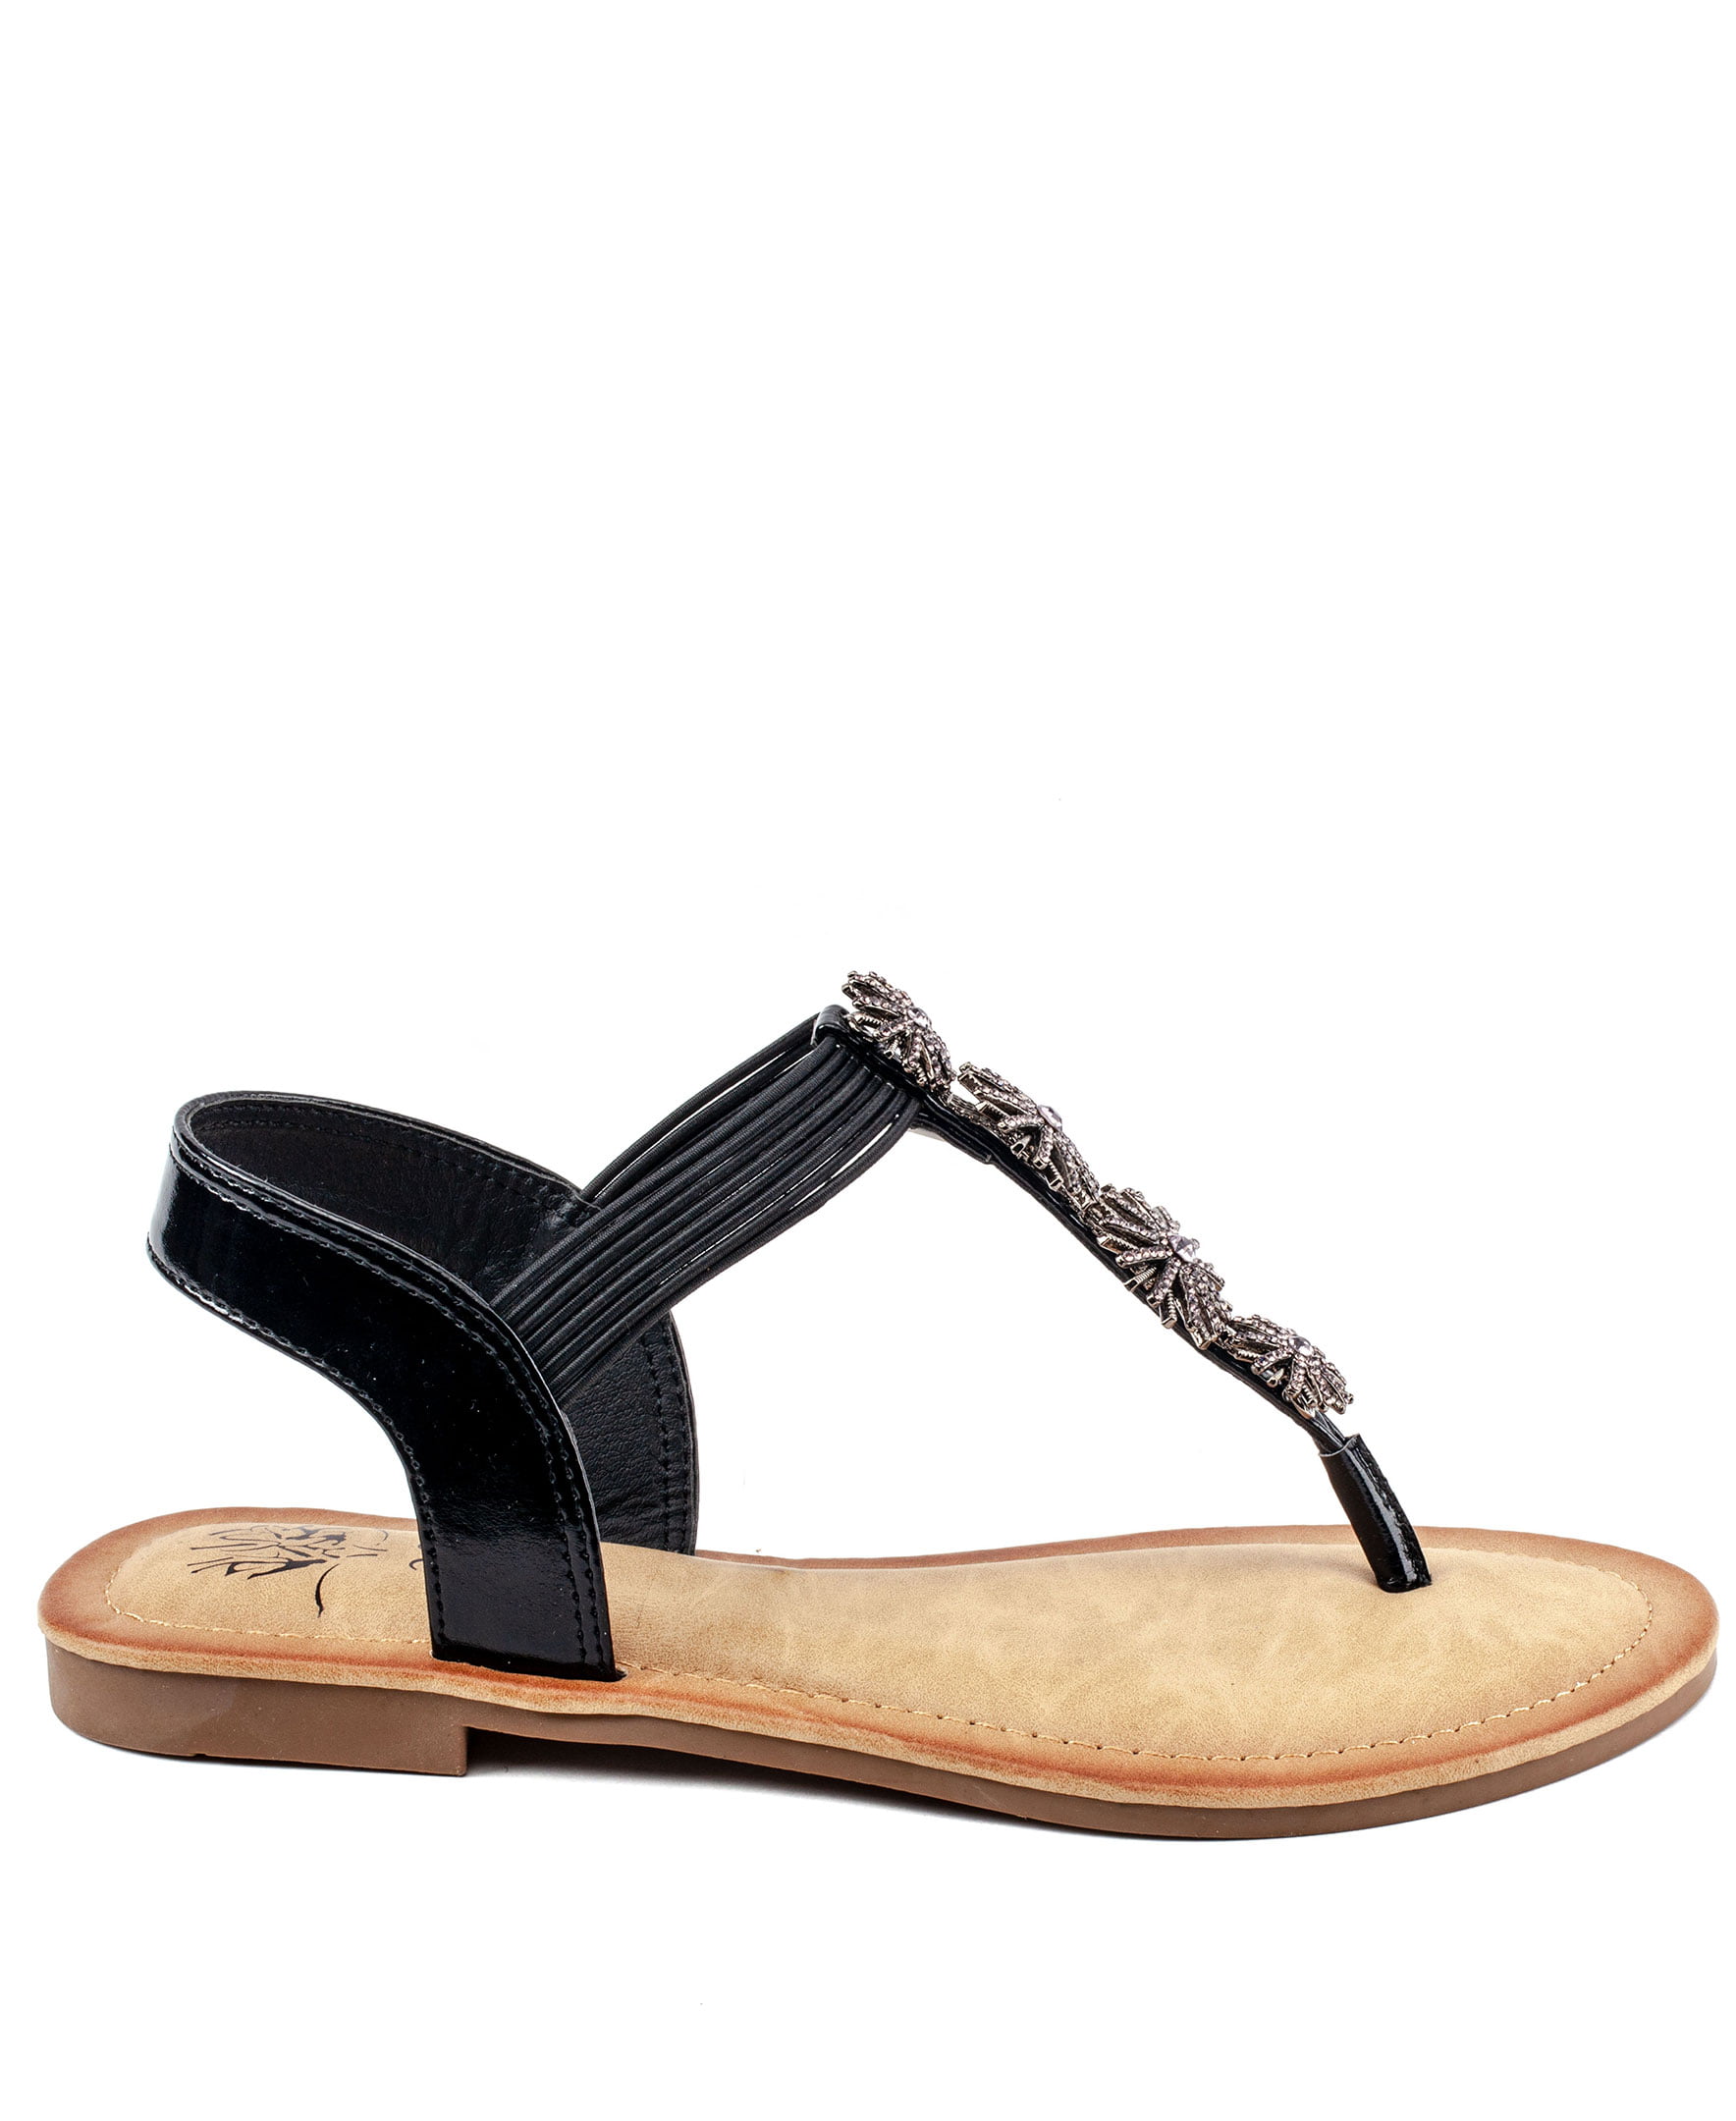 Månenytår mængde af salg Økonomi GC Shoes Women's Jeweled T Strap Flat Sandals, Dressy Elastic Summer Ankle  Flats, Comfy Fashion Sandal, Carlie/Black/6.5 - Walmart.com